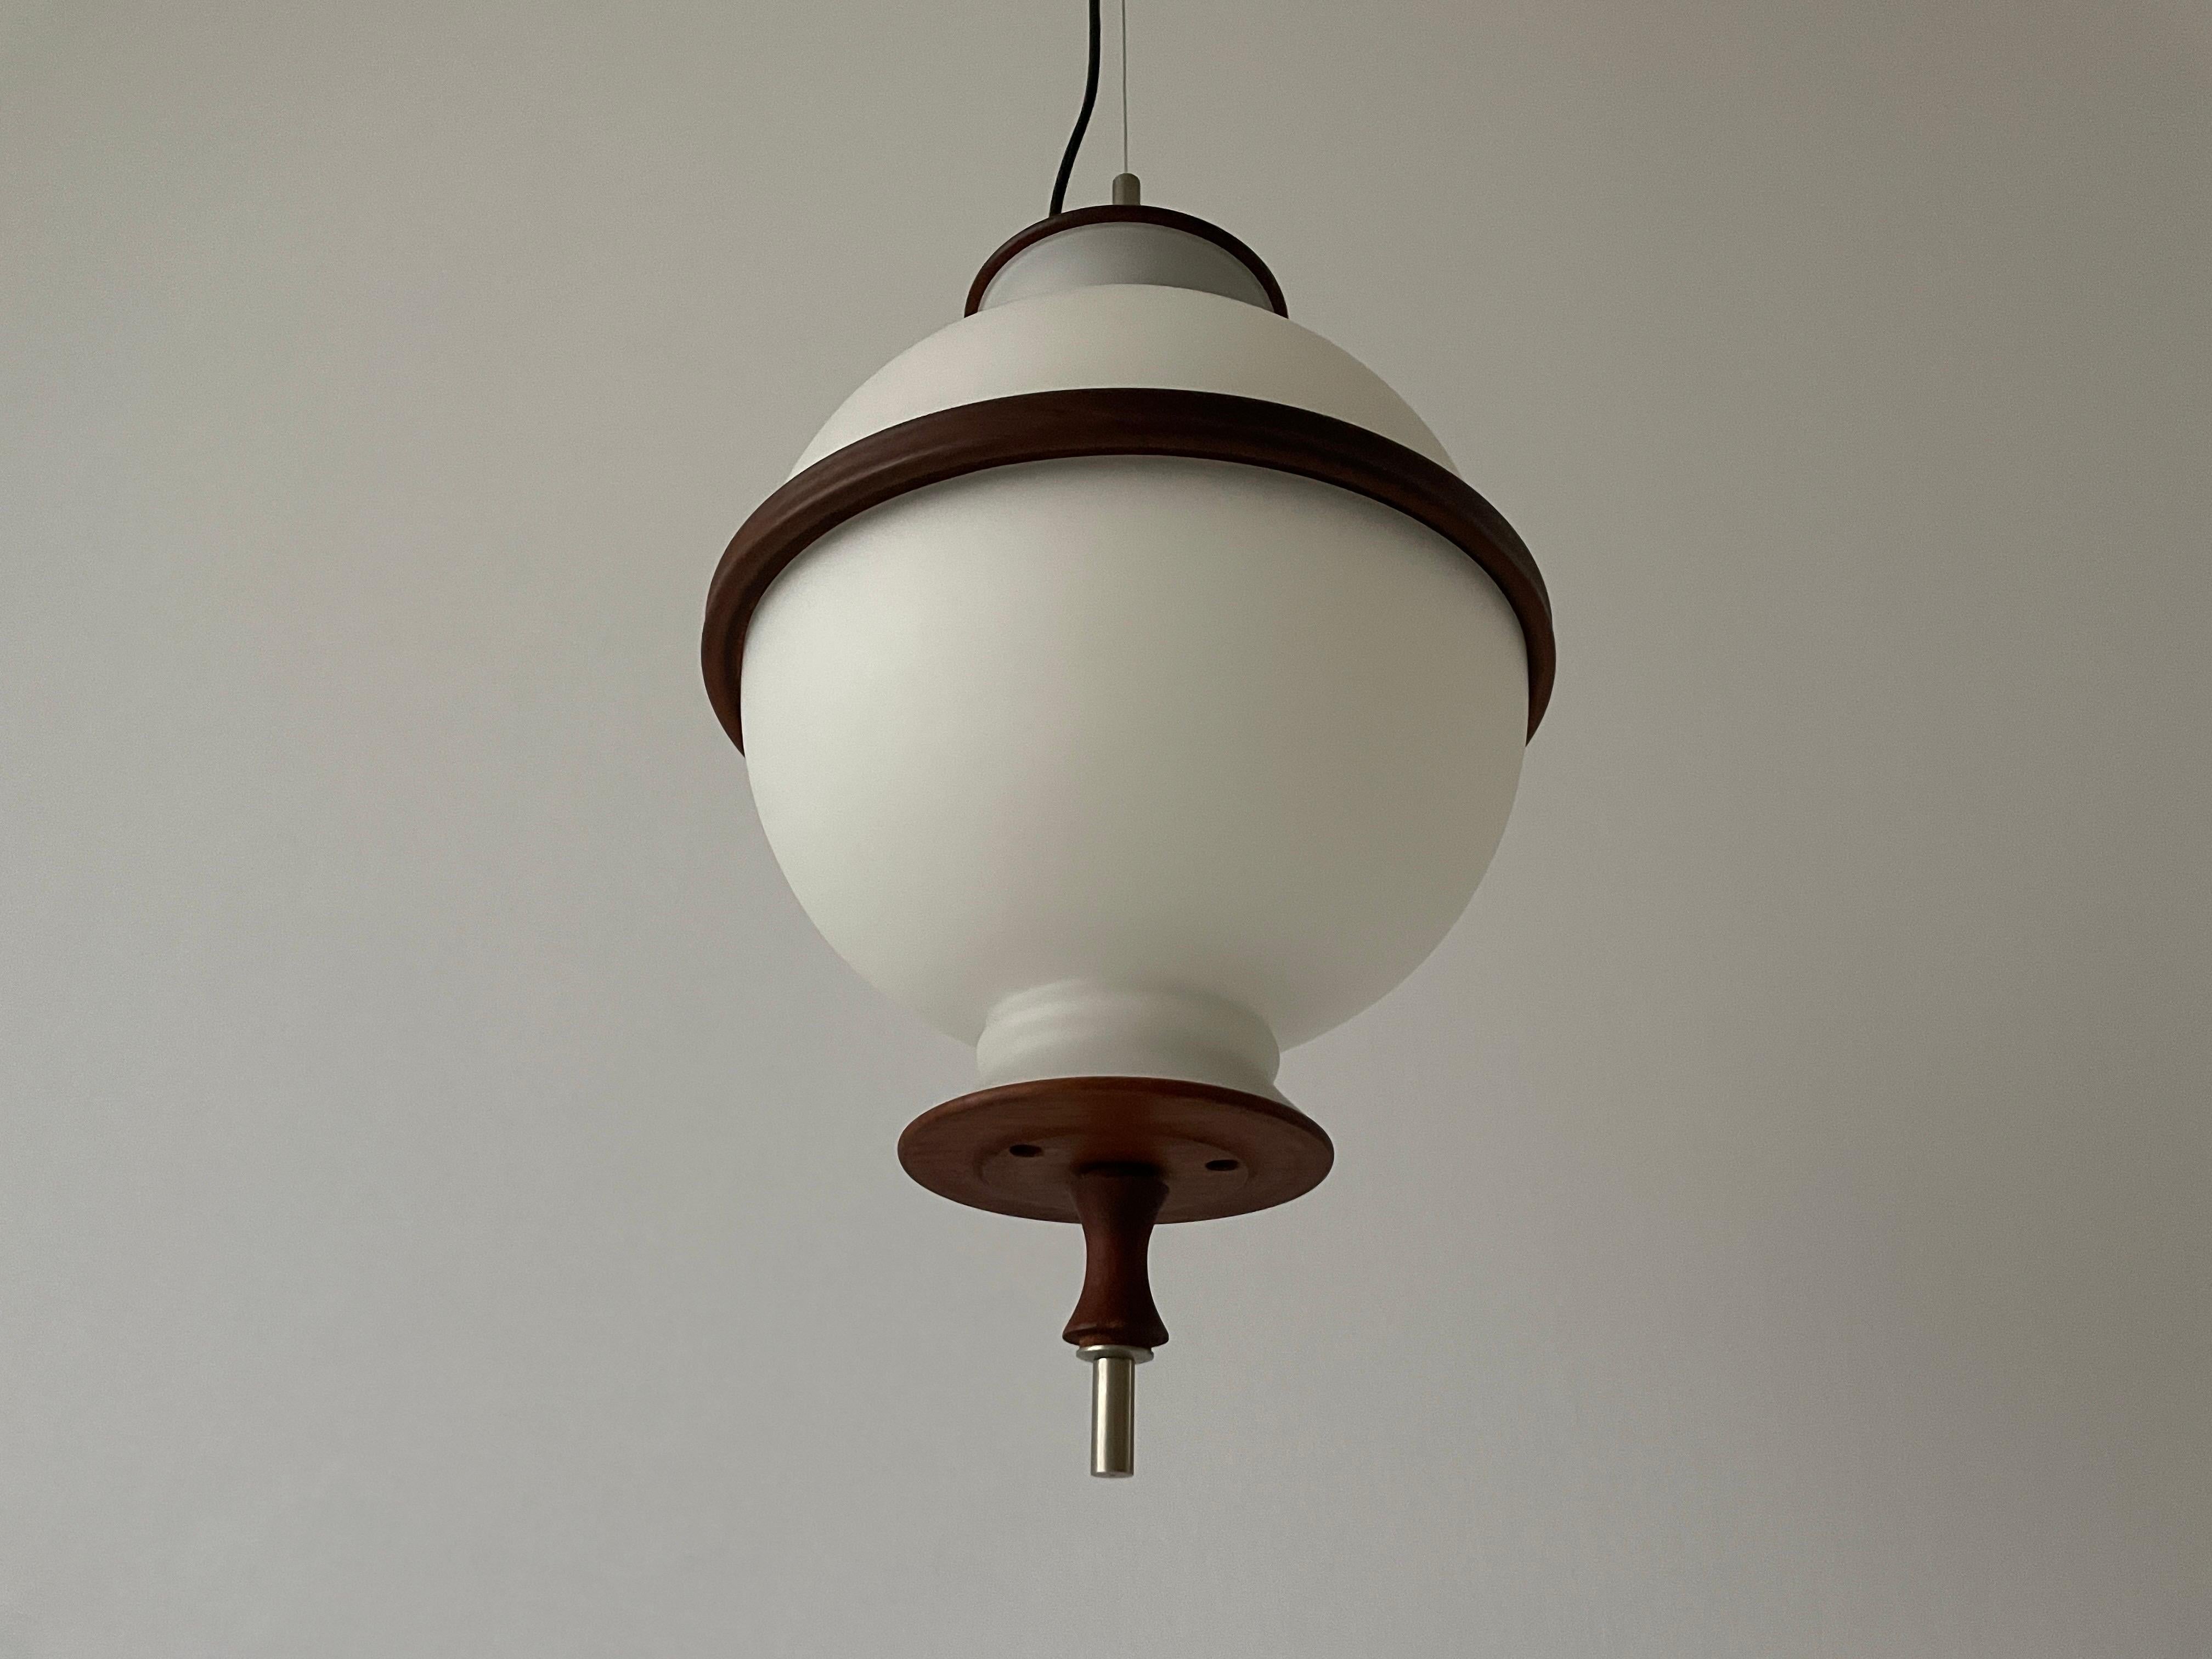 Plafonnier Ital de Reggiani Illuminazione, années 1960

Cette lampe fonctionne avec des ampoules E27. 
Câblé et adapté à une utilisation avec 220V et 110V pour tous les pays.

Mesures :
Hauteur : 140 cm (peut être raccourci)
Diamètre et hauteur de